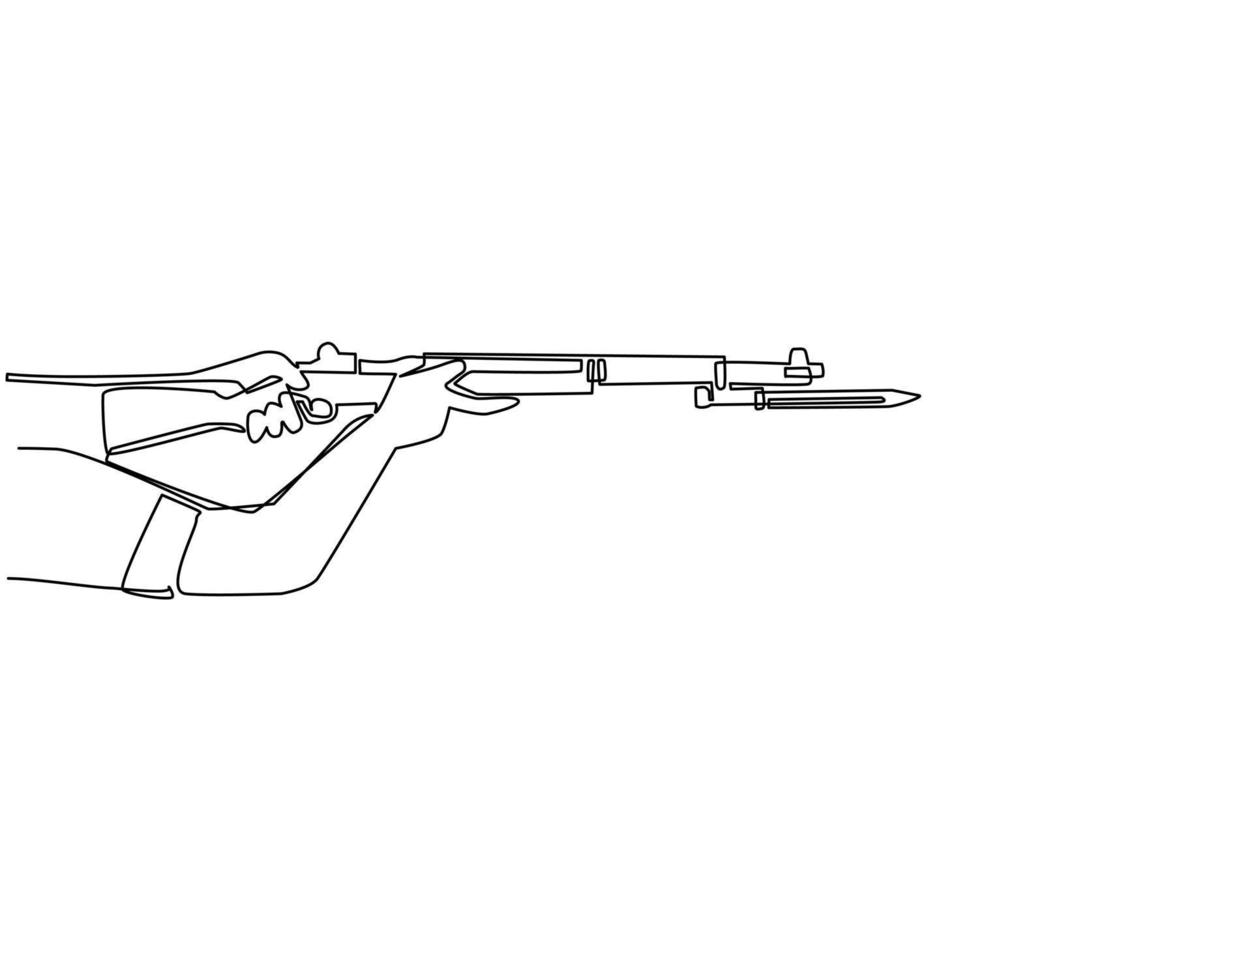 fortlaufende einzeilige zeichnungshand, die m1 garand halbautomatisches gewehr mit messerbajonett hält. britisches Militärgewehr mit aufgesetztem Bajonett. einzeiliges zeichnen design vektorgrafik illustration vektor